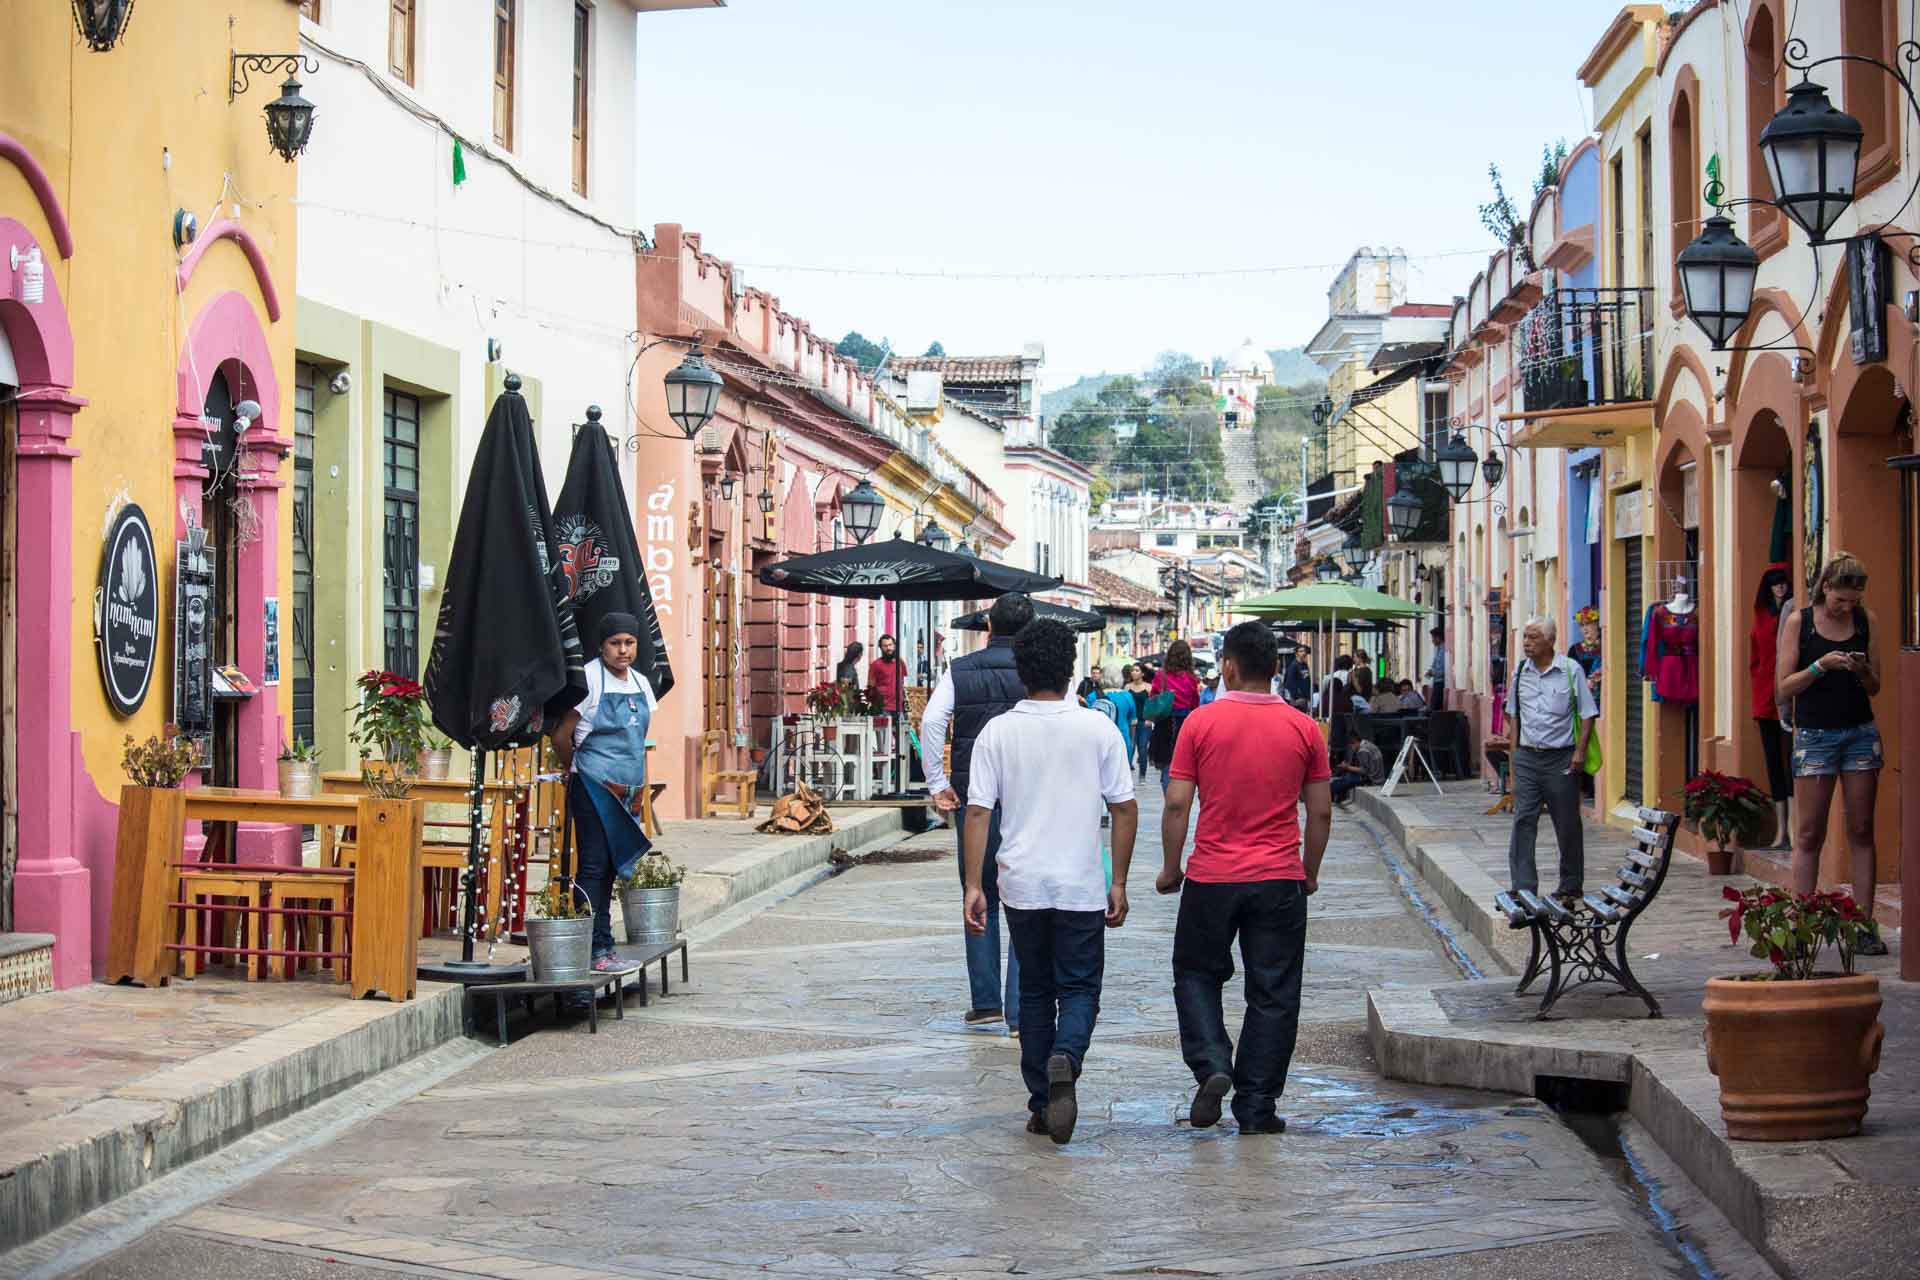 San Cristobal de las Casas: A Travel Guide to this Magical Mexican Town